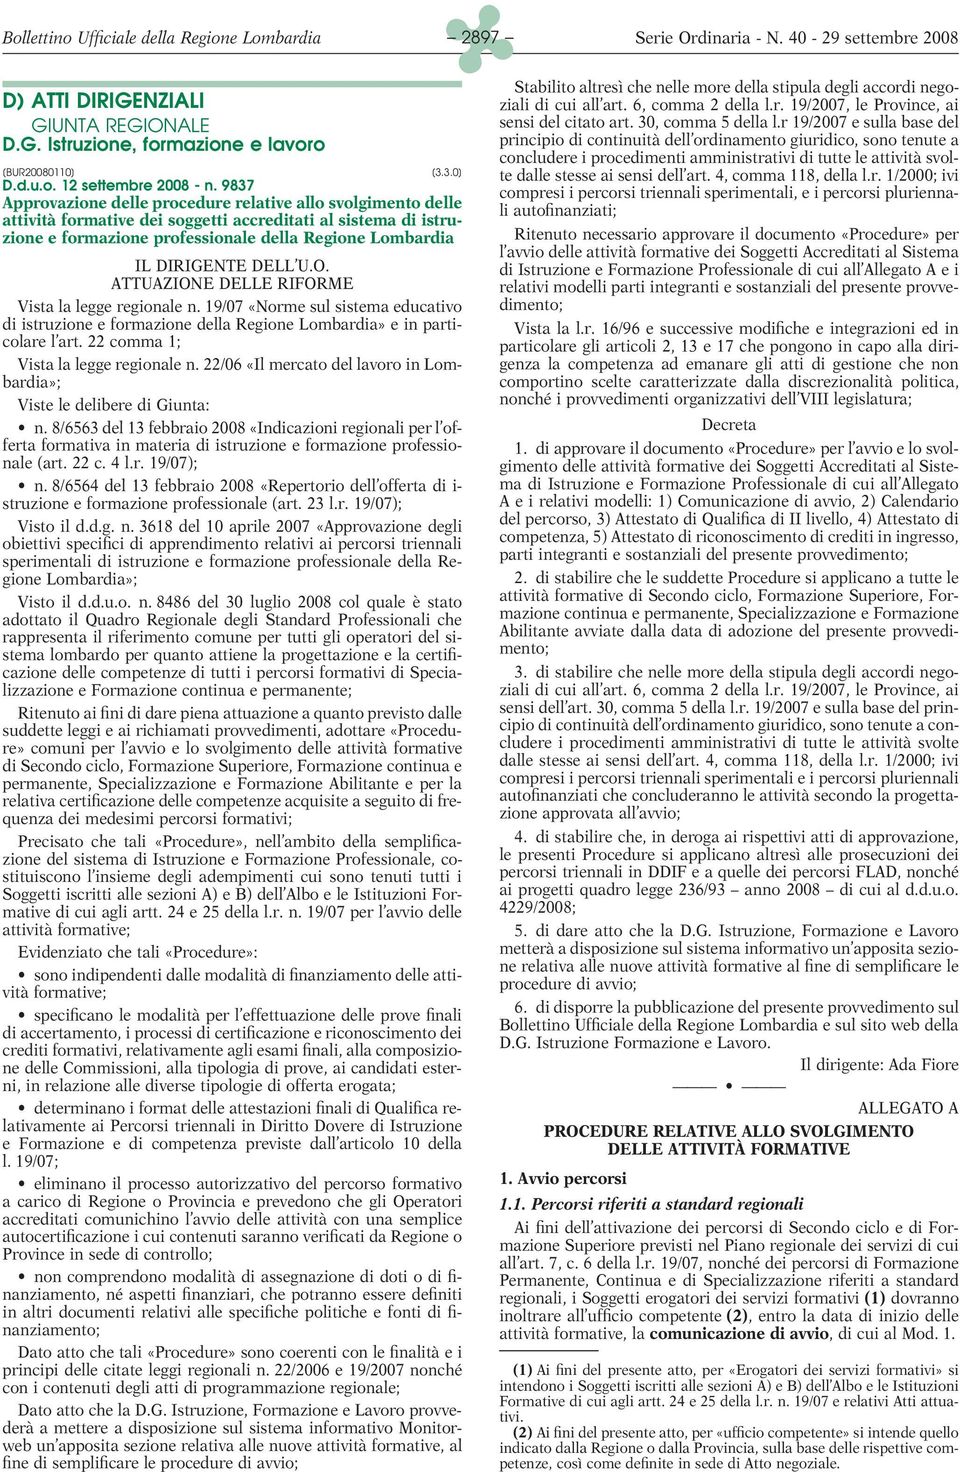 DELL U.O. ATTUAZIONE DELLE RIFORME Vista la legge regionale n. 19/07 «Norme sul sistema educativo di istruzione e formazione della Regione Lombardia» e in particolare l art.